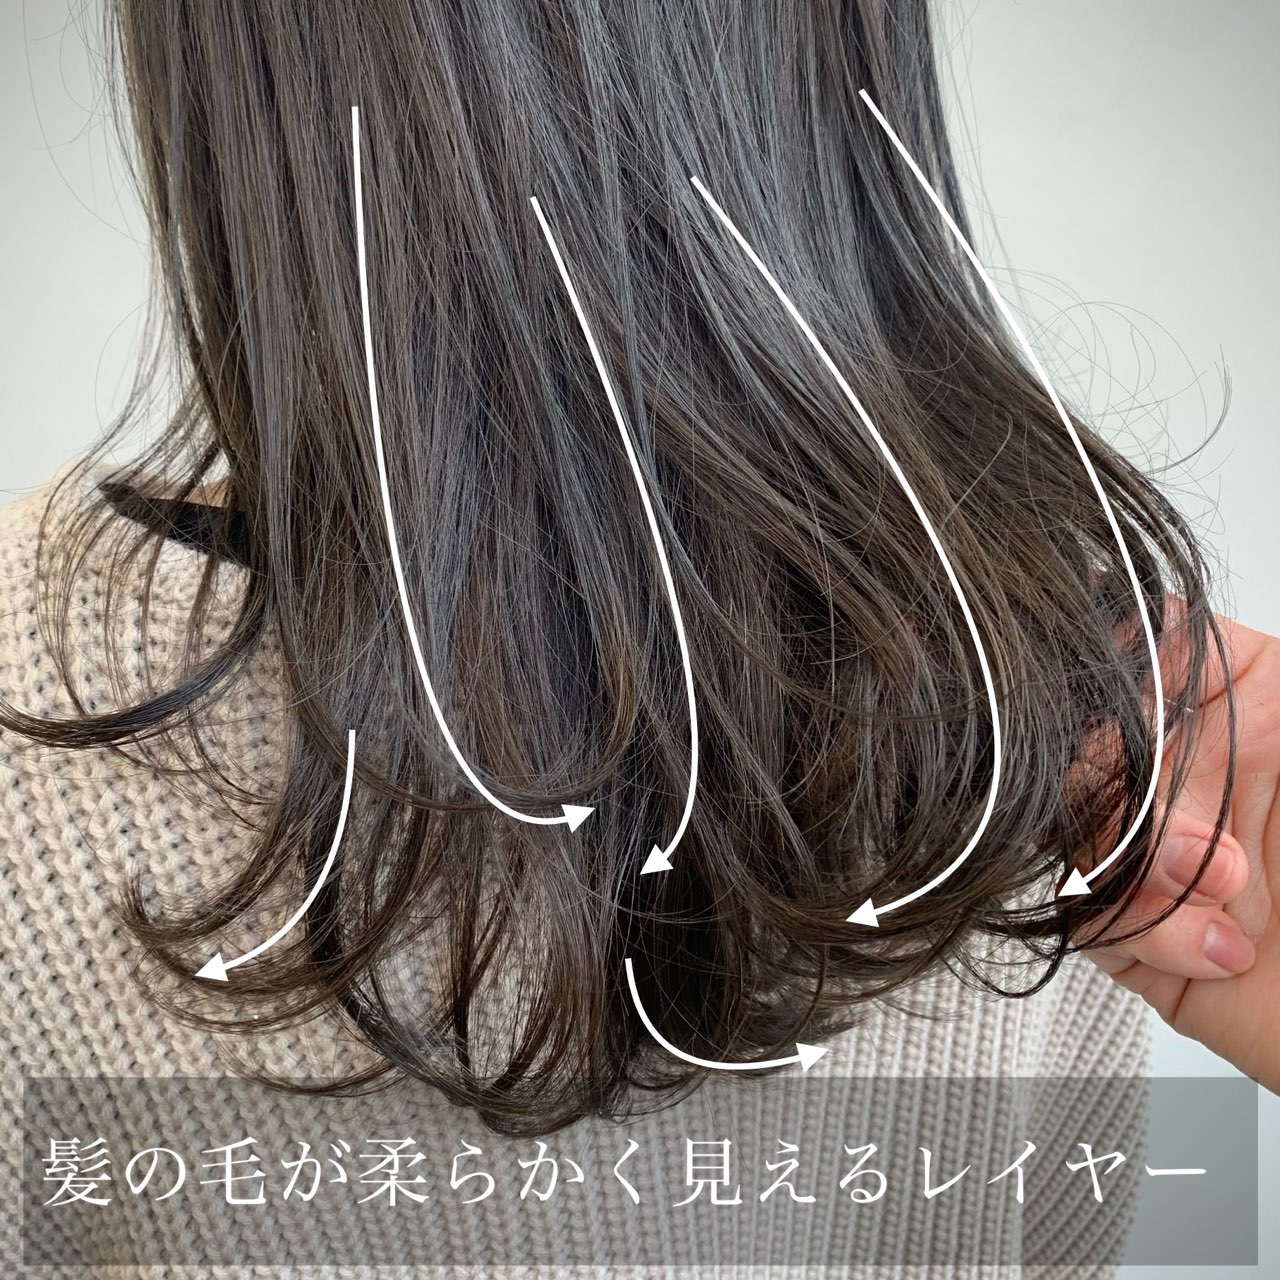 髪の毛が硬い方オススメ ソフトレイヤー Un Ami 表参道 新宿 美容室 アンアミ